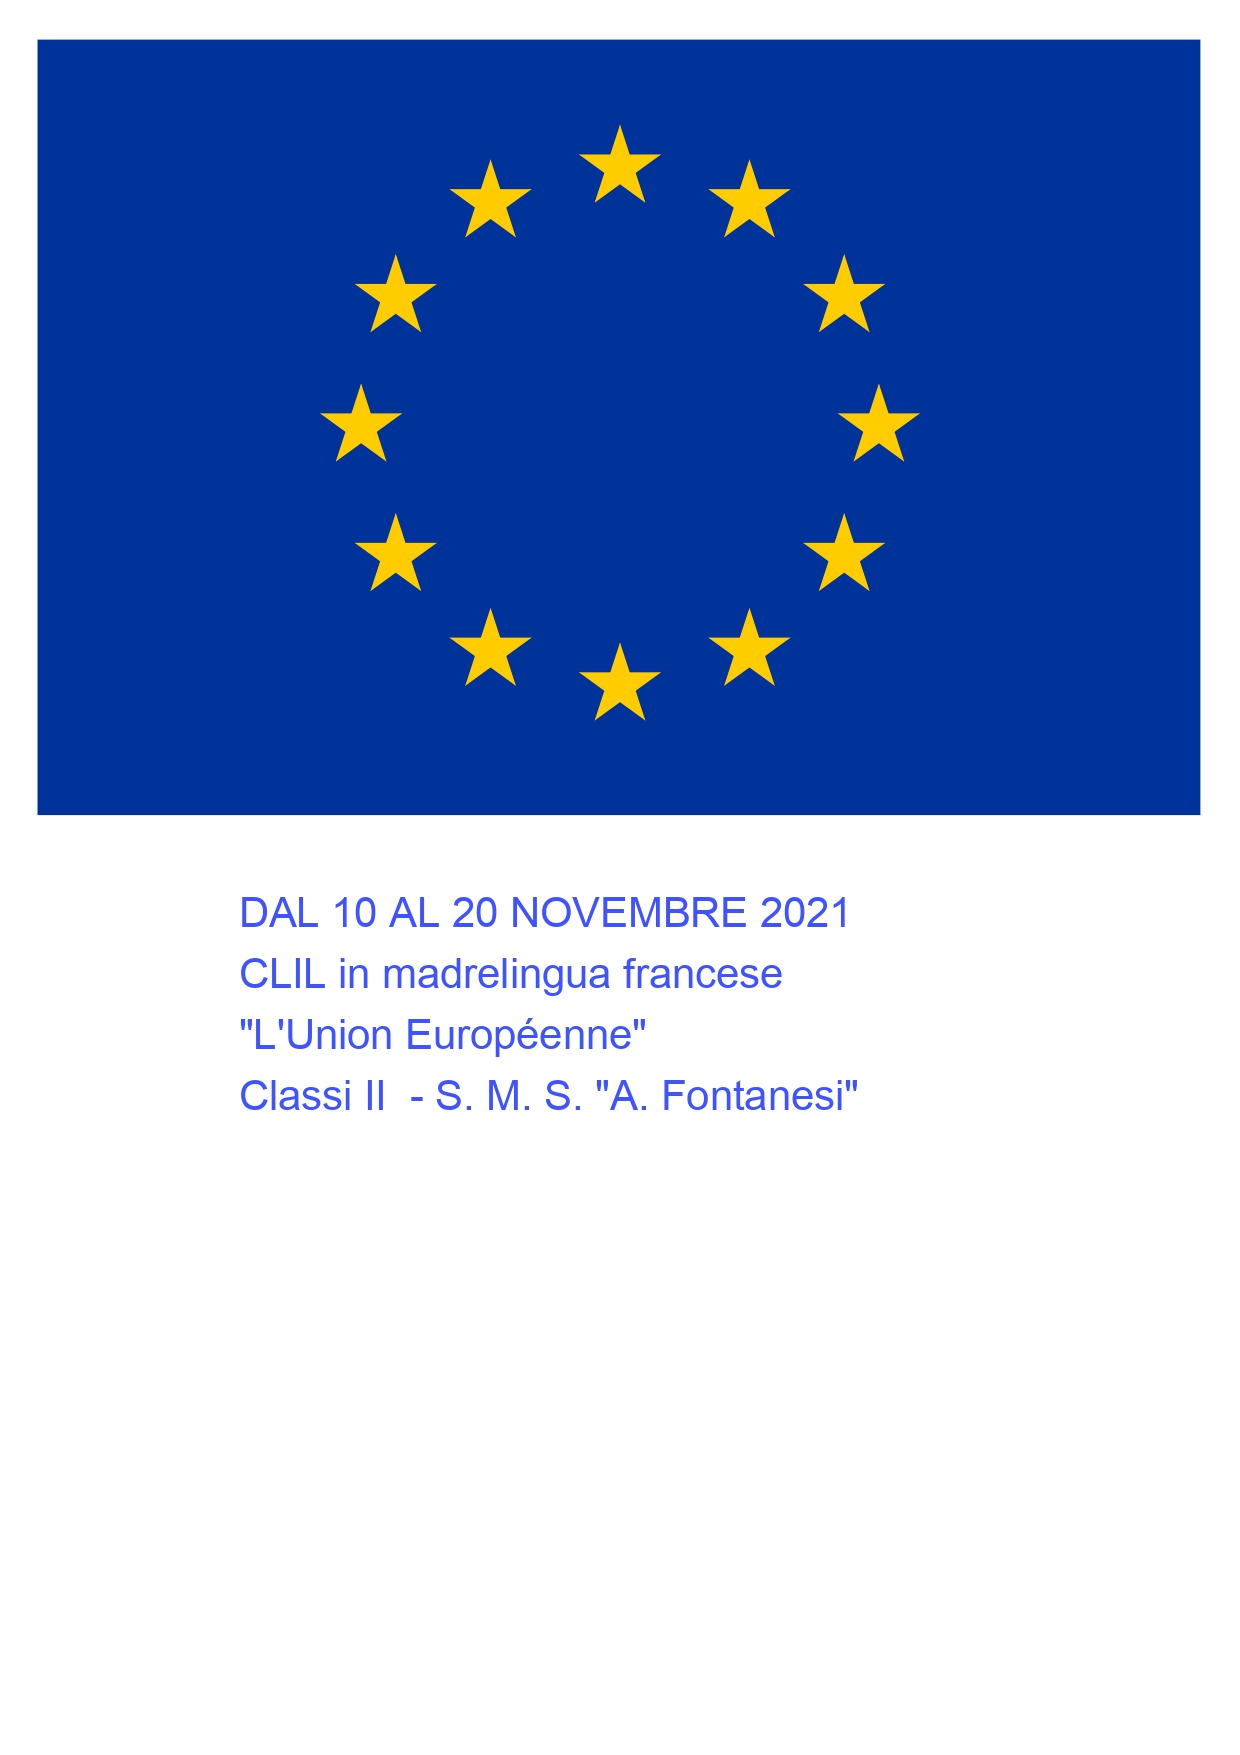 CLIL in madrelingua francese  "L'Union Européenne"